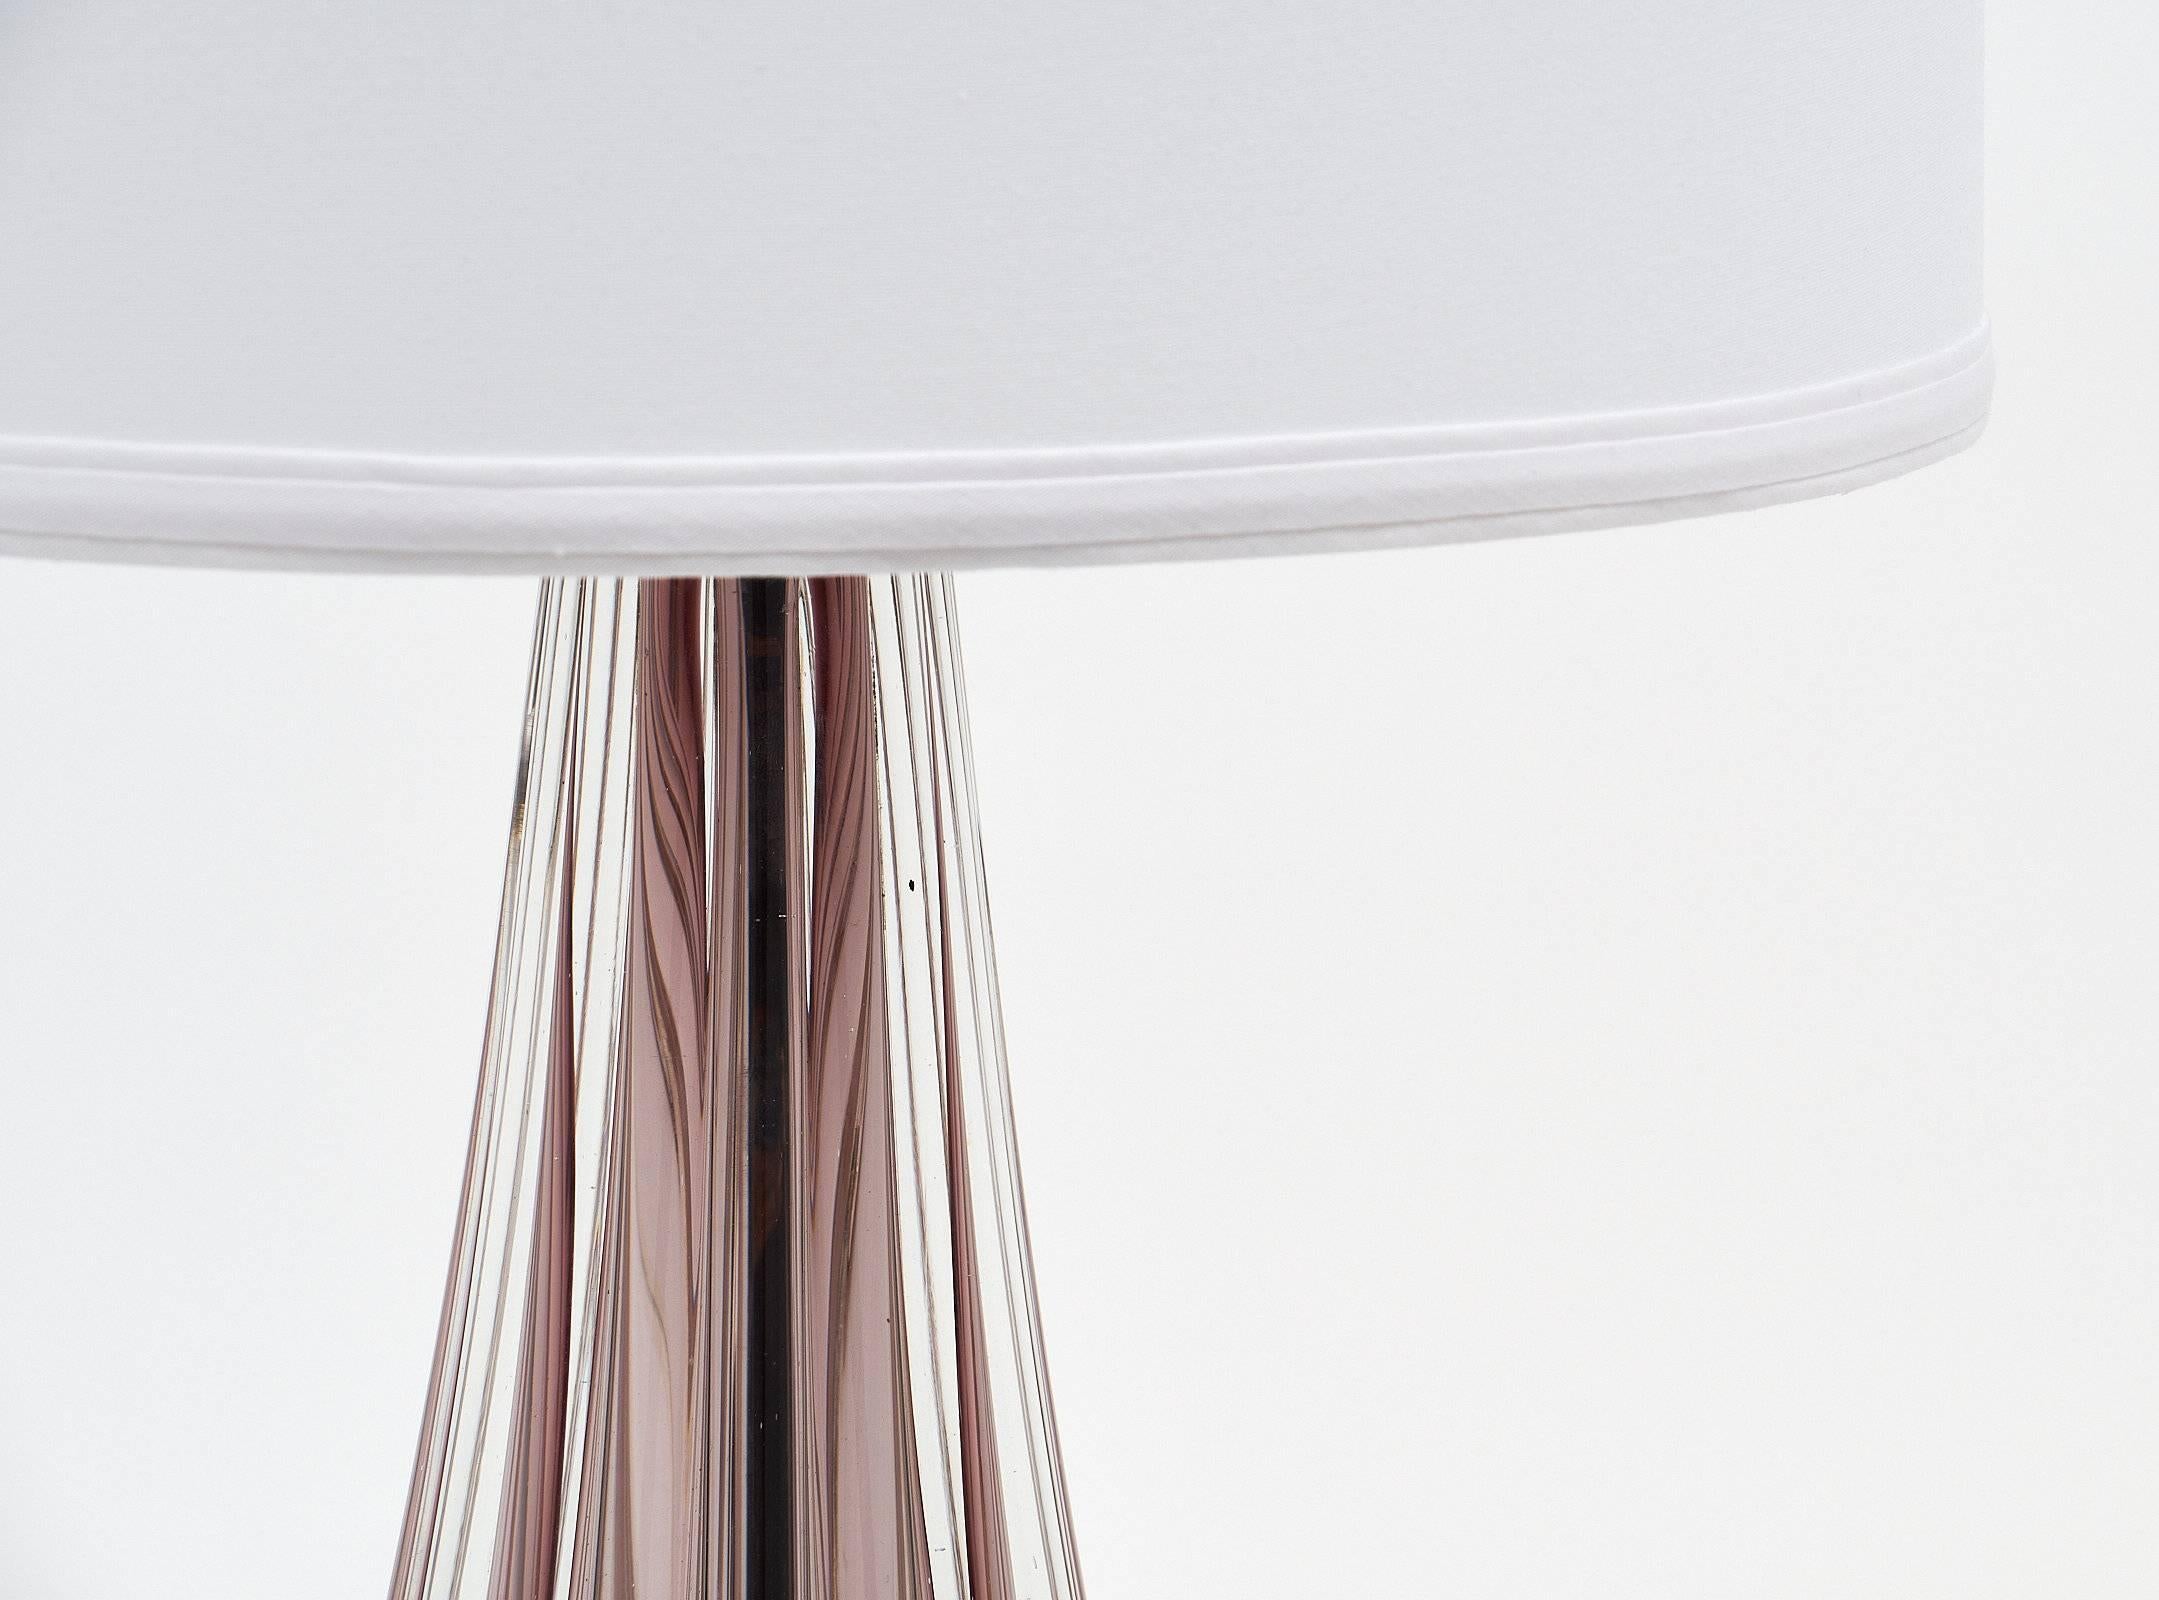 Ein Paar Murano Tischlampen aus amethystfarbenem Glas, mundgeblasen in Italien. Ein atemberaubendes Lampenpaar. Das Glas ist ein brillanter, schöner Amethyst, der in jedem Raum einen eleganten Glanz erzeugt. Jede Leuchte benötigt eine Glühbirne mit